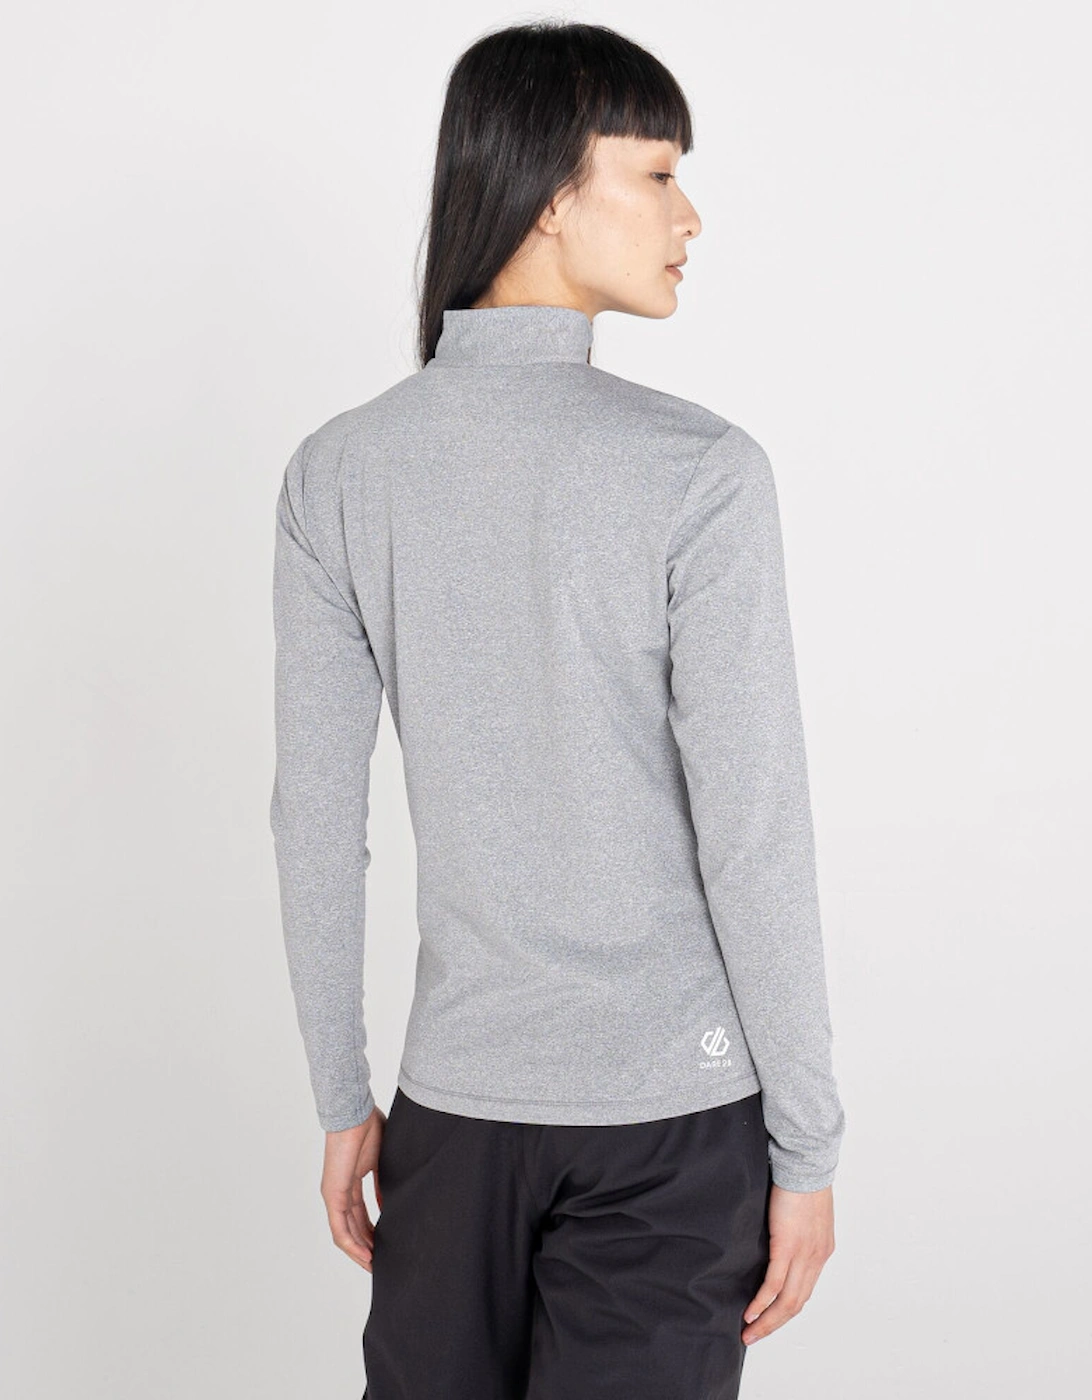 Womens Lowline II Stretch Half Zip Warm Sweater